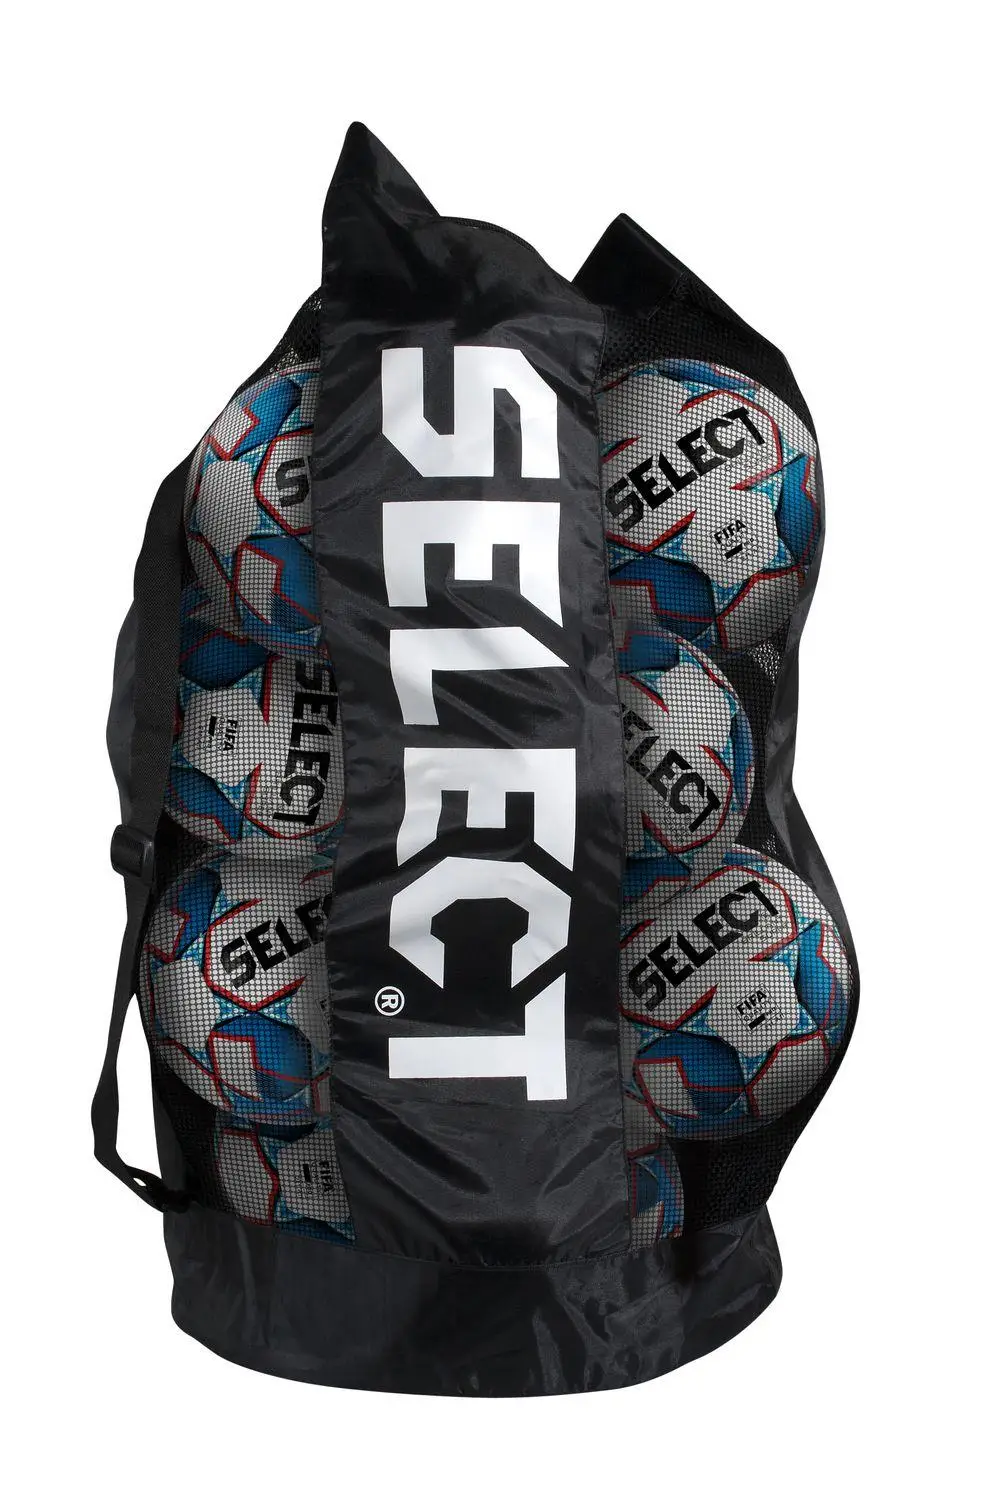 Сумка для футбольных мячей SELECT Football bag чорний, 10-12 balls